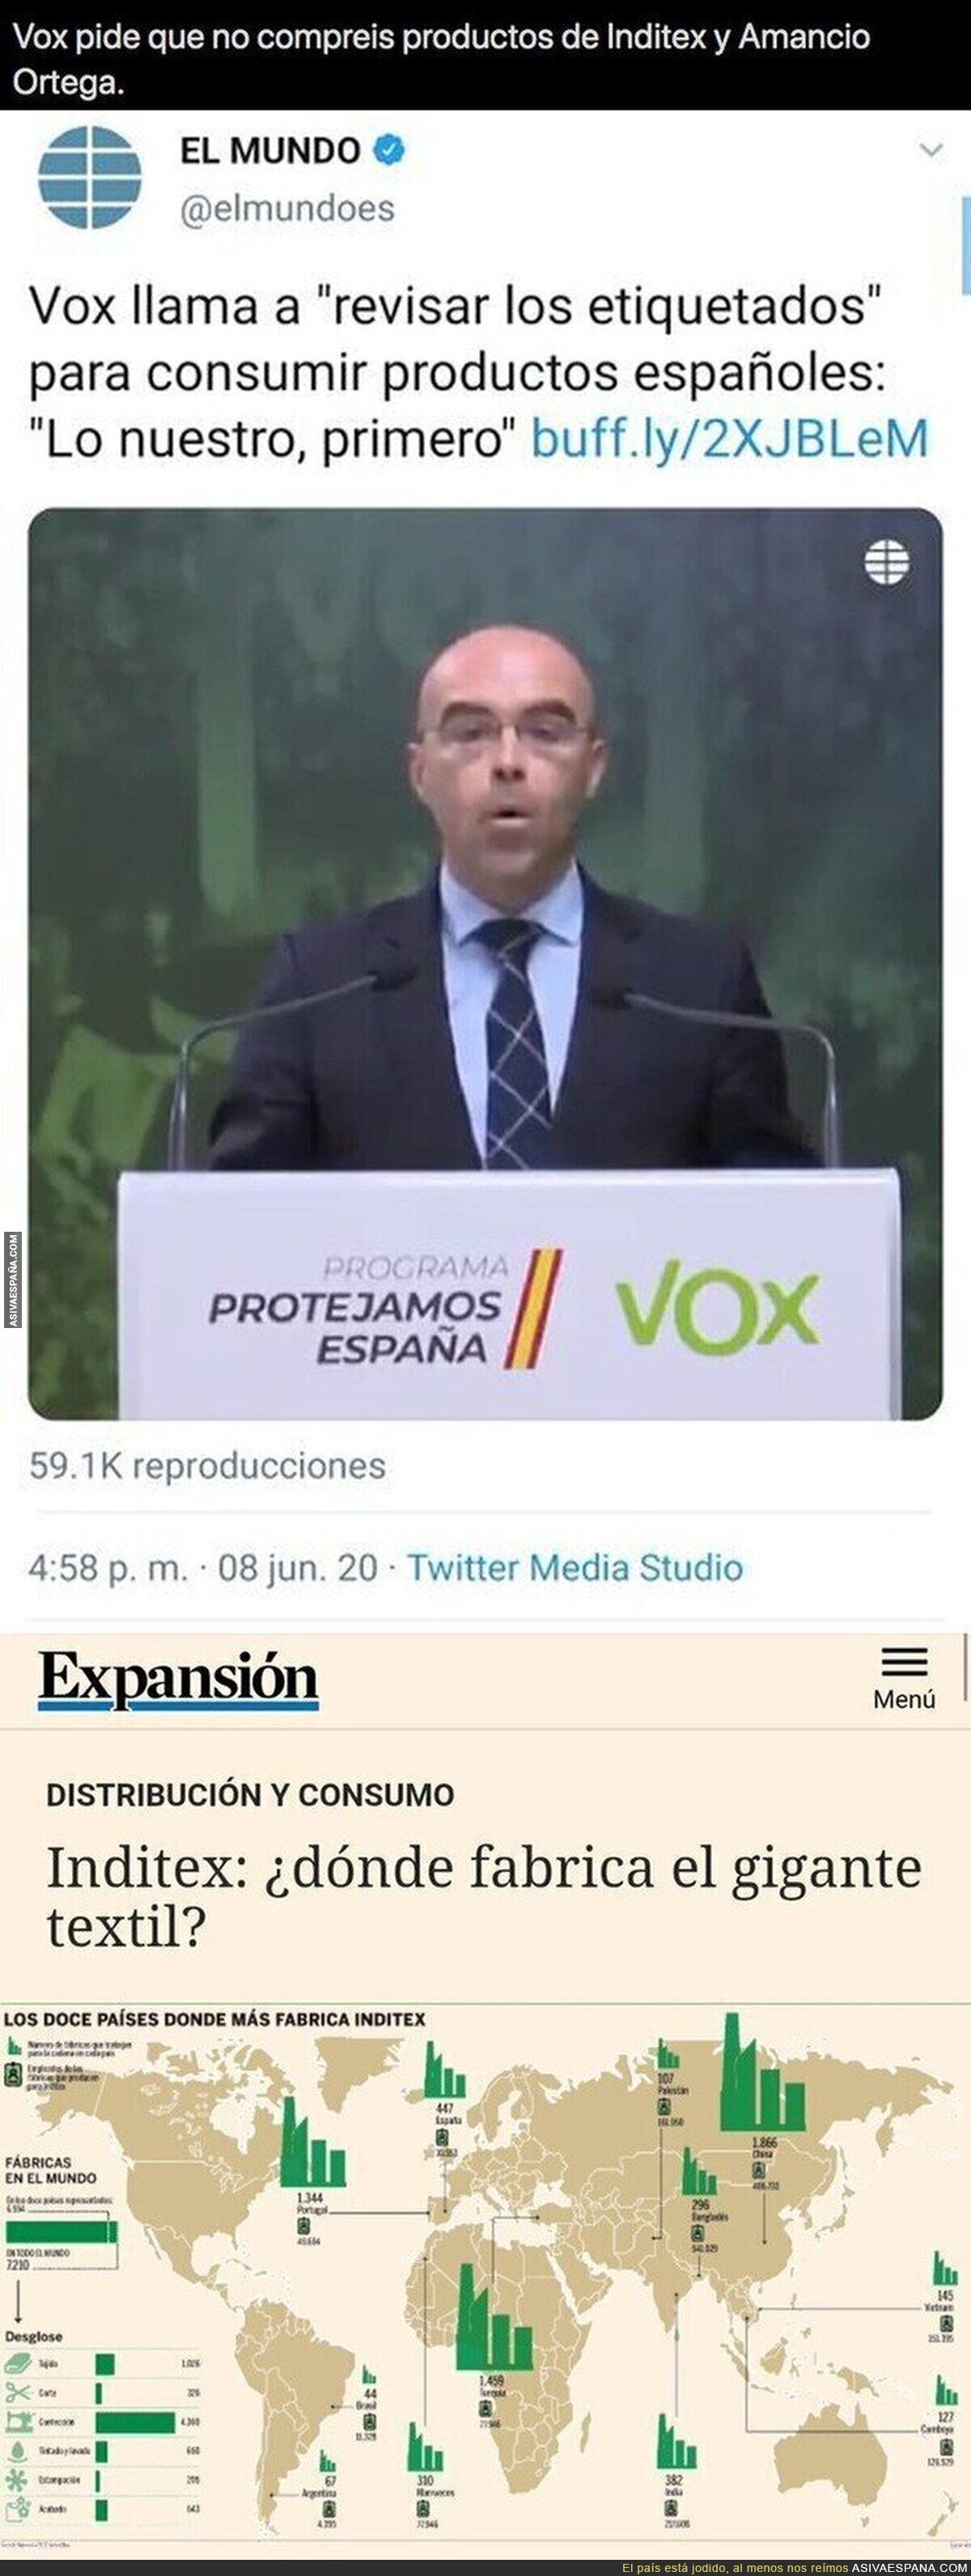 Campaña de VOX contra Amancio Ortega